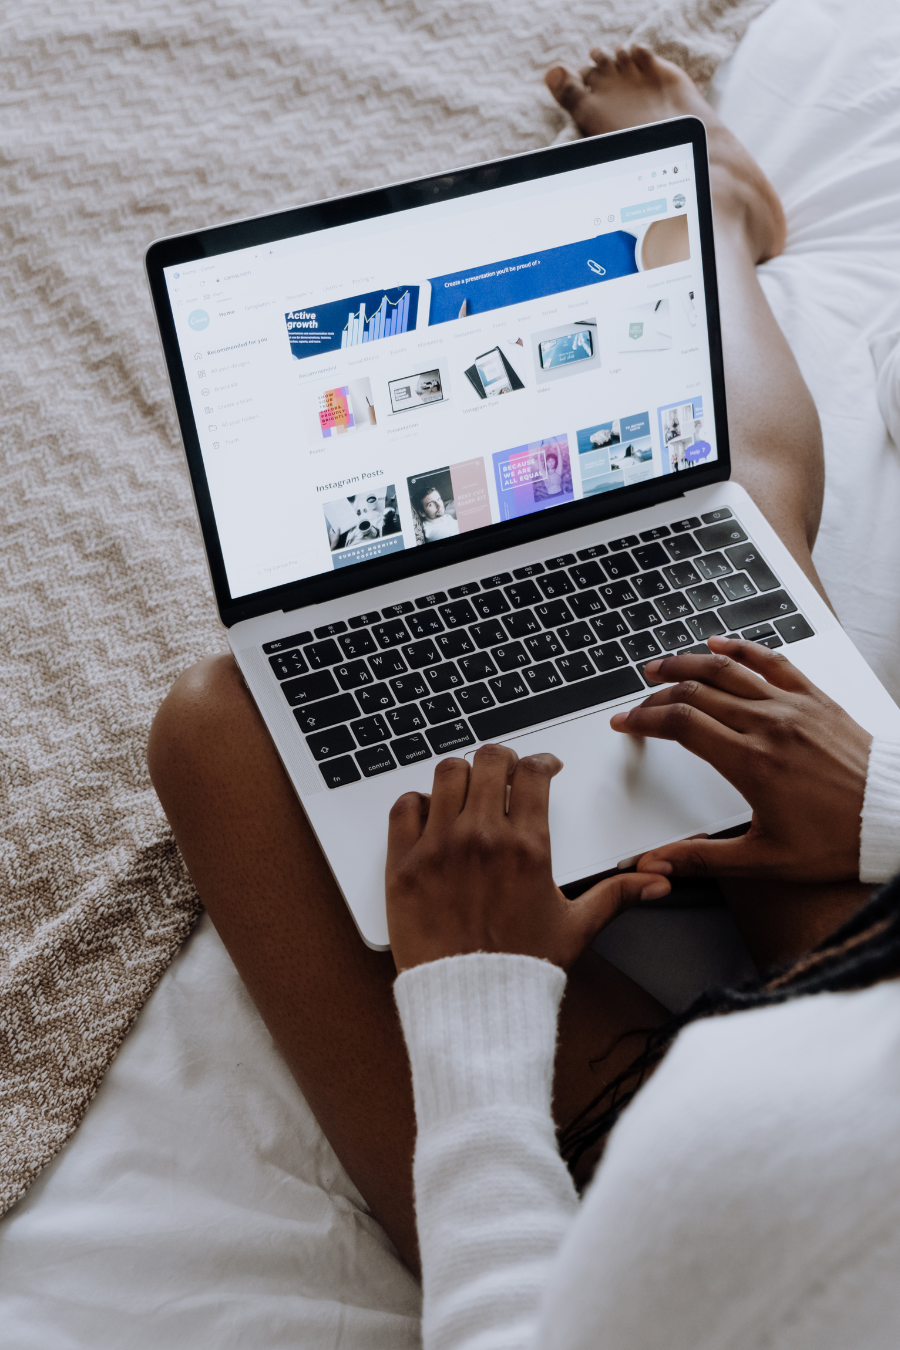 laptop on woman's legs website open